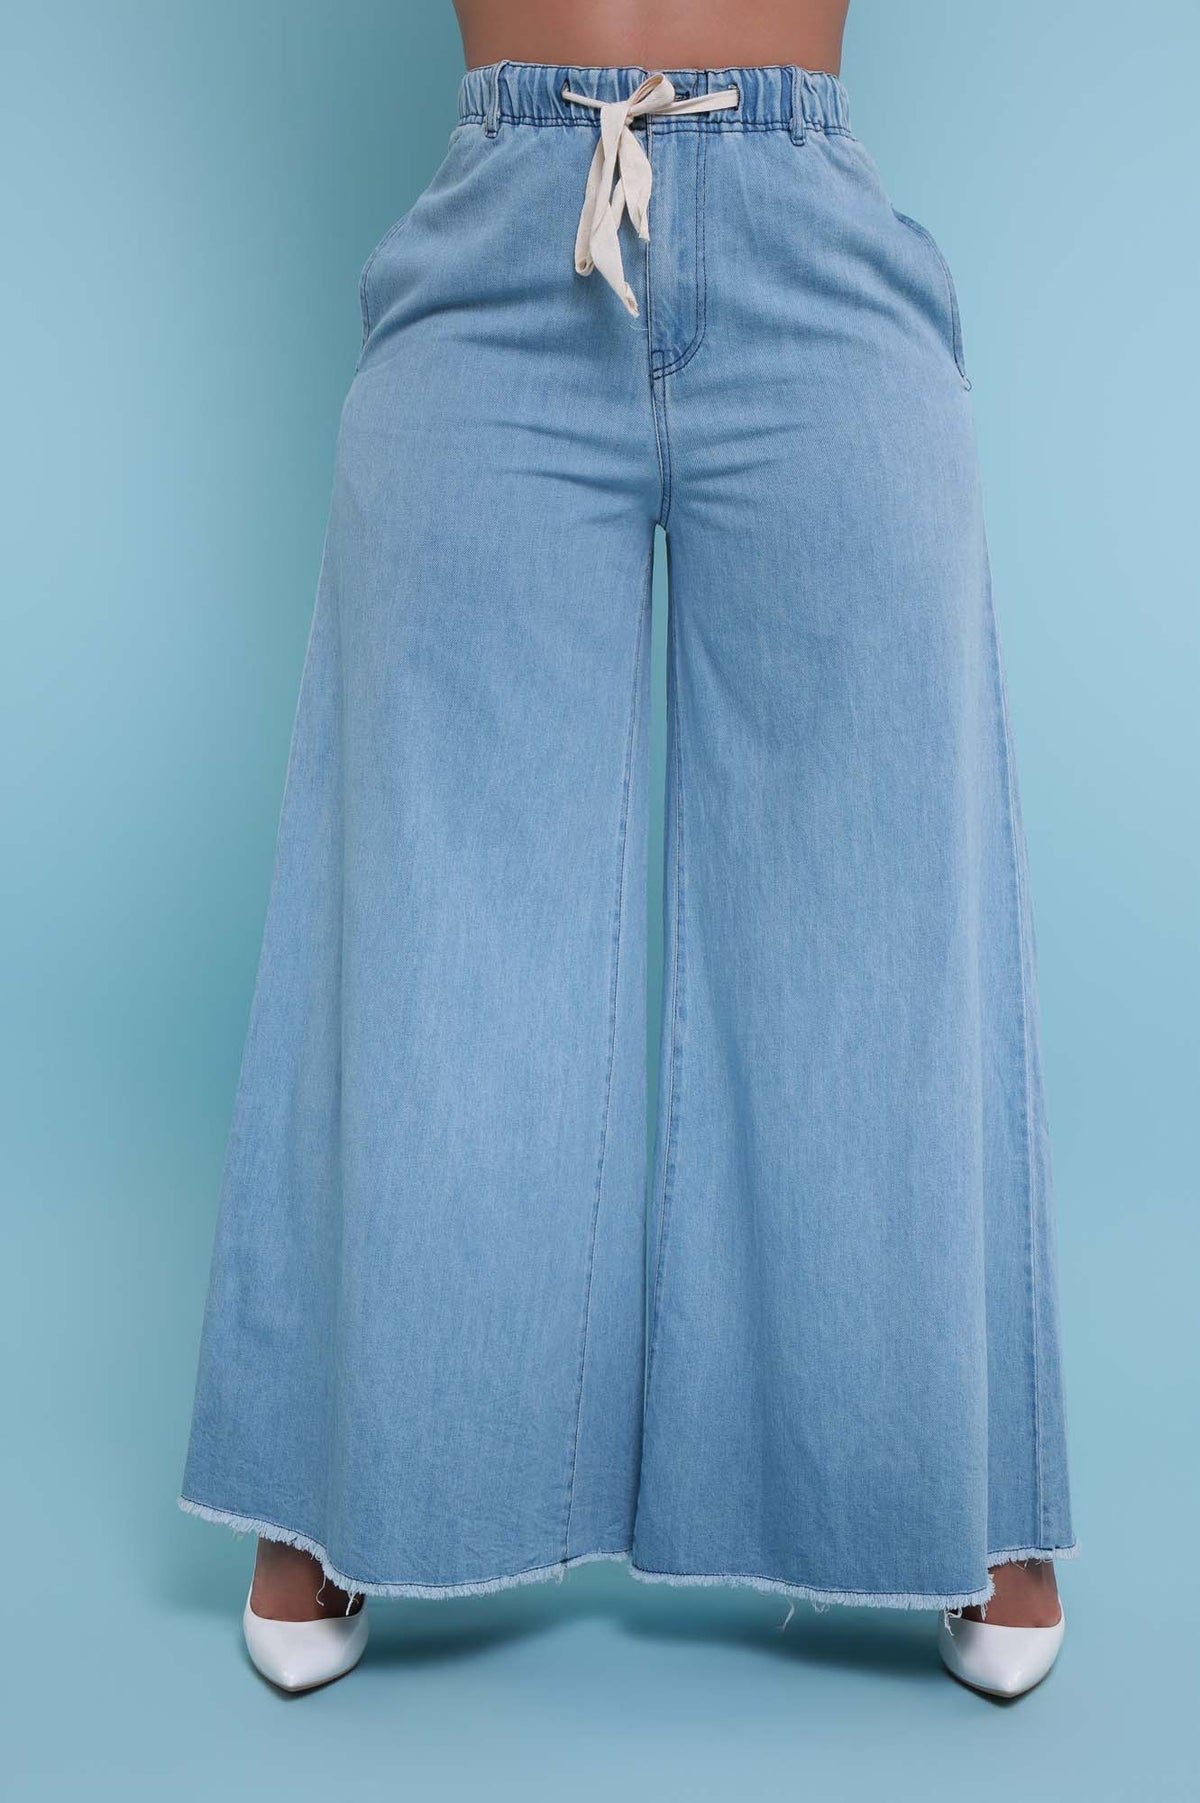 Shoppers Say These Flattering Amazon Work Pants Feel Like Sweats